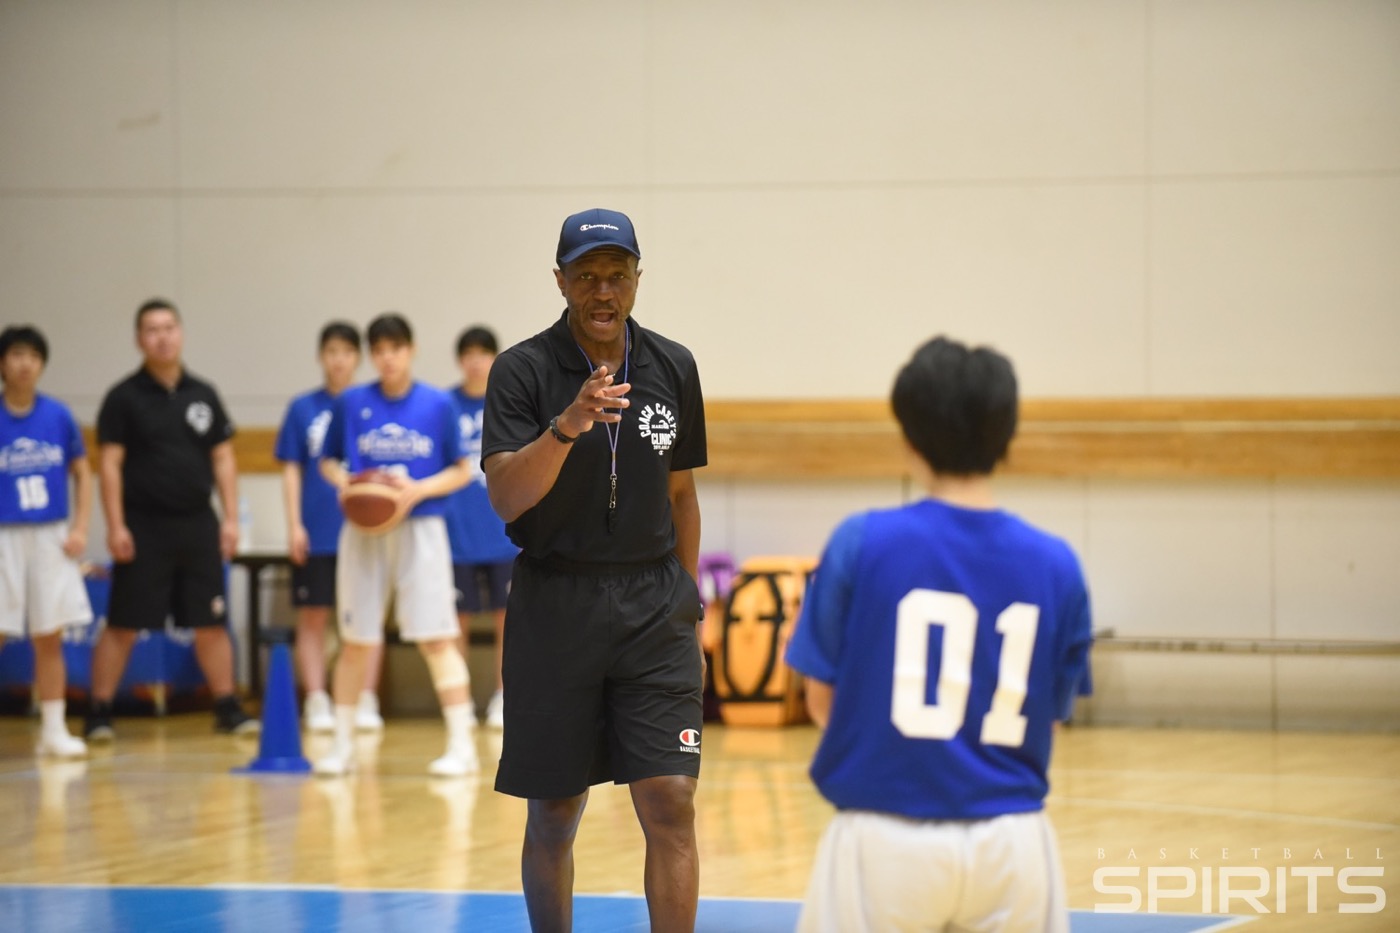 忠誠心と友情で日本にやってきたnba コーチ オブ ザ イヤー 後編 バスケットボールスピリッツ Part 2